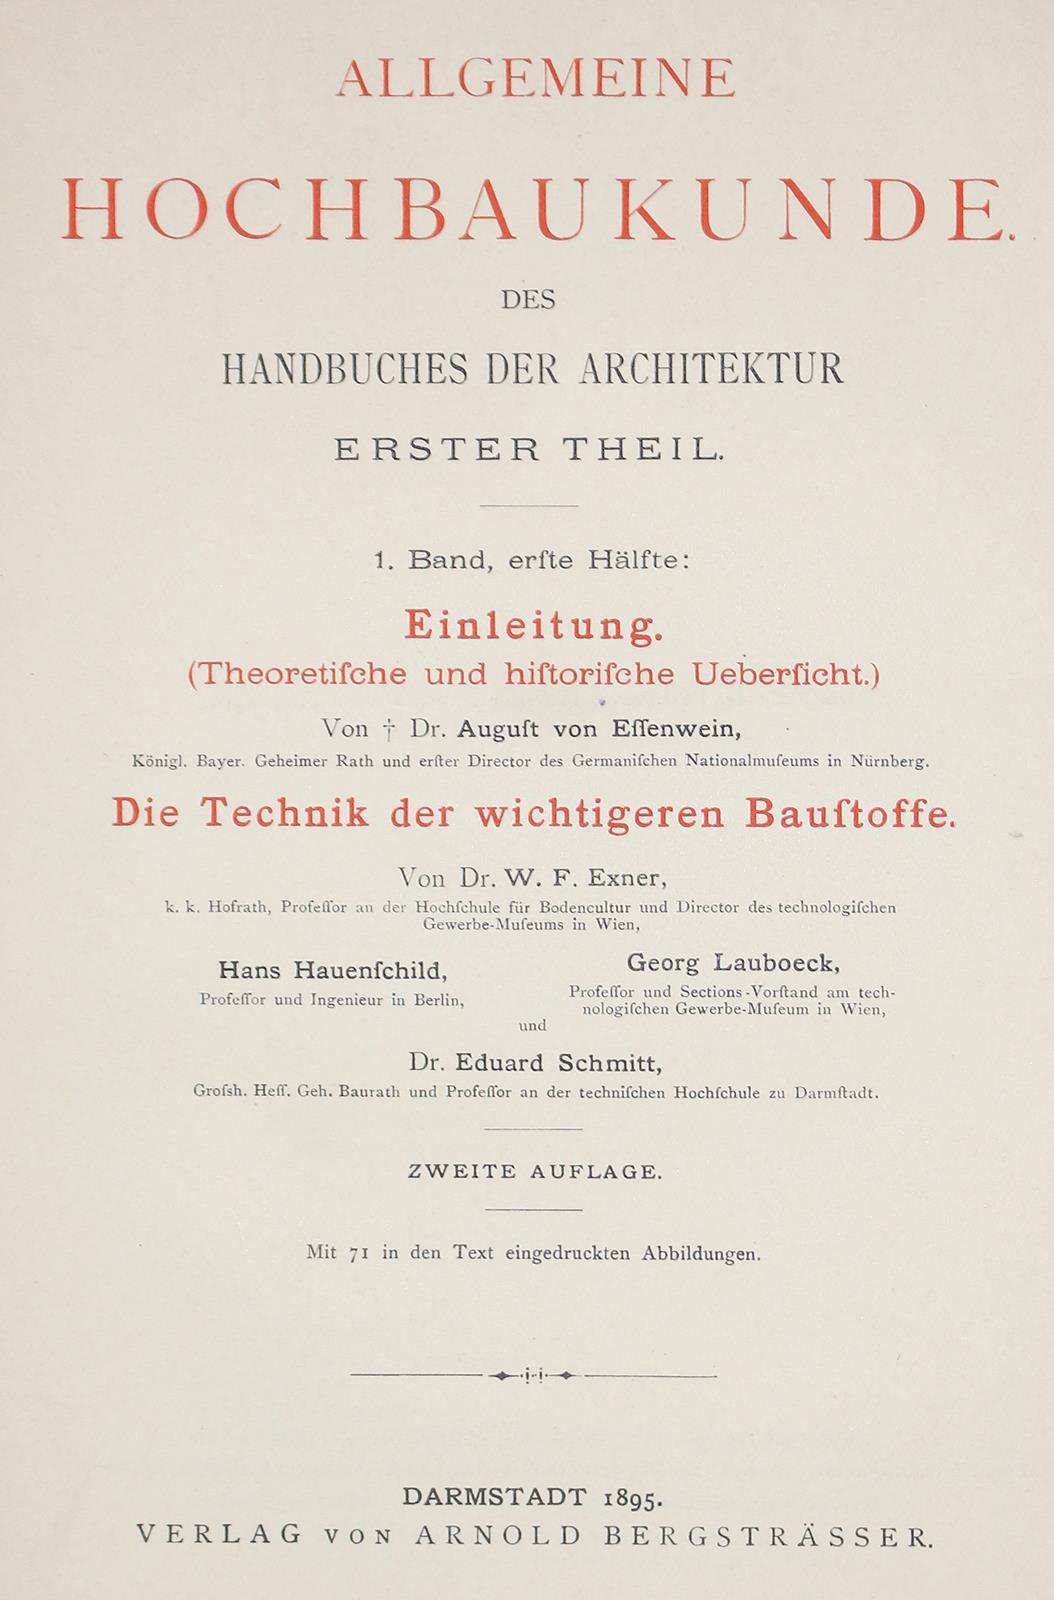 Handbuch der Architektur. | Bild Nr.3